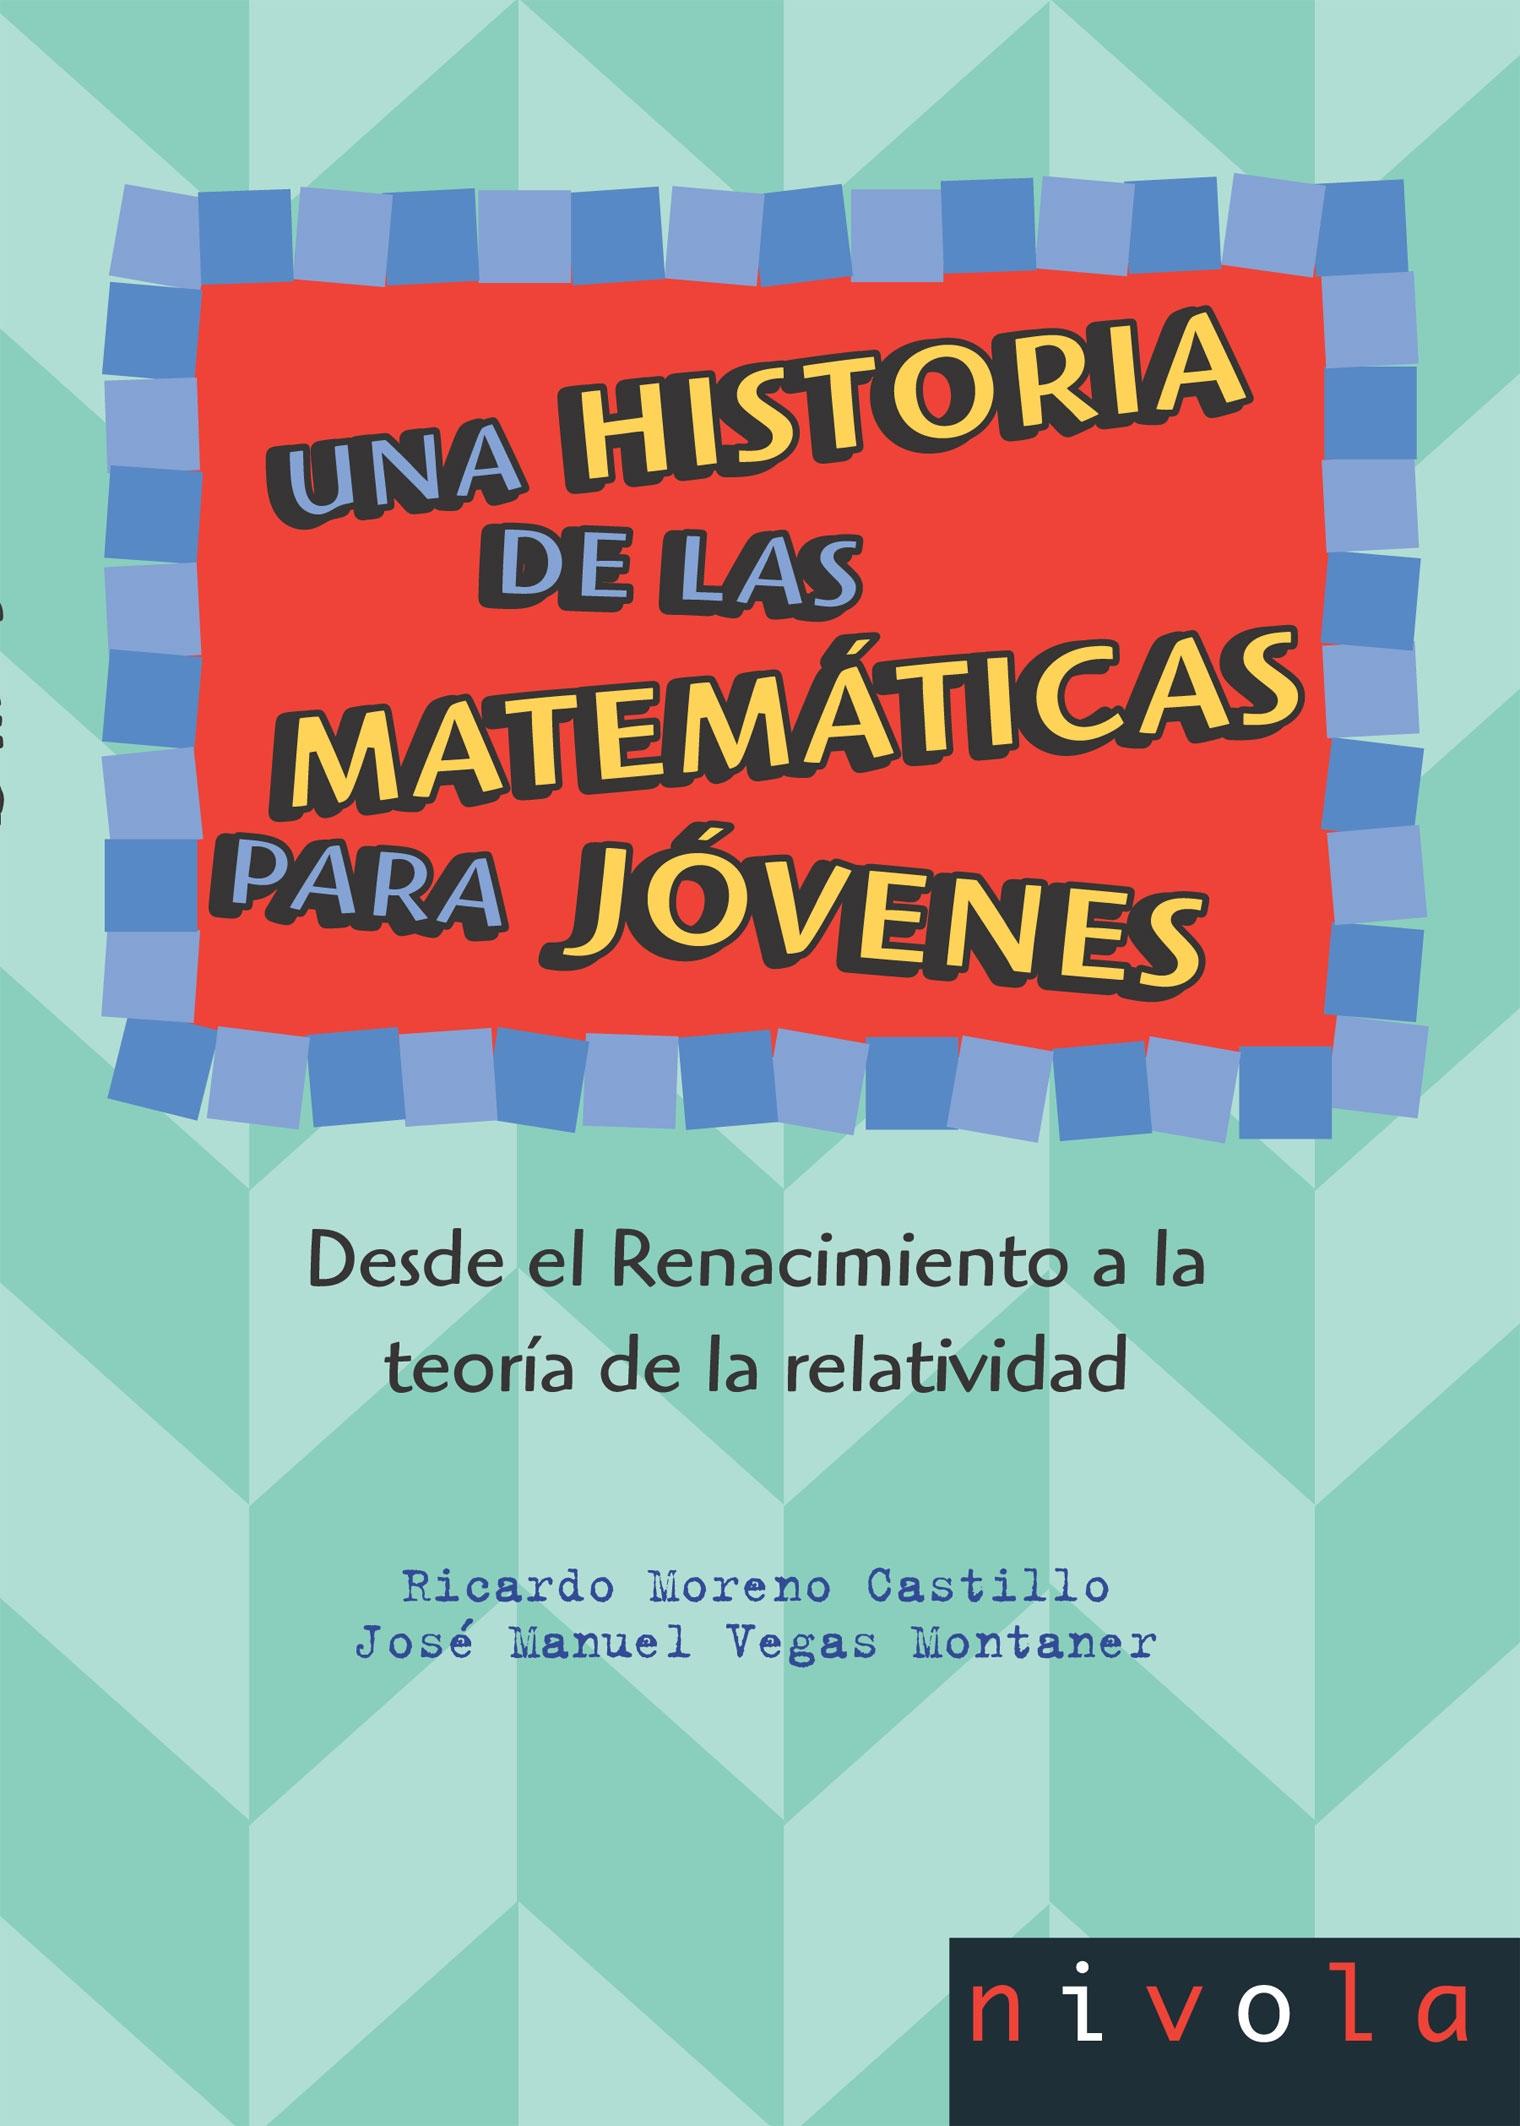 Una historia de las matemáticas para jóvenes II Tomo 2 "Desde el Renacimiento a la teoría de la relatividad"